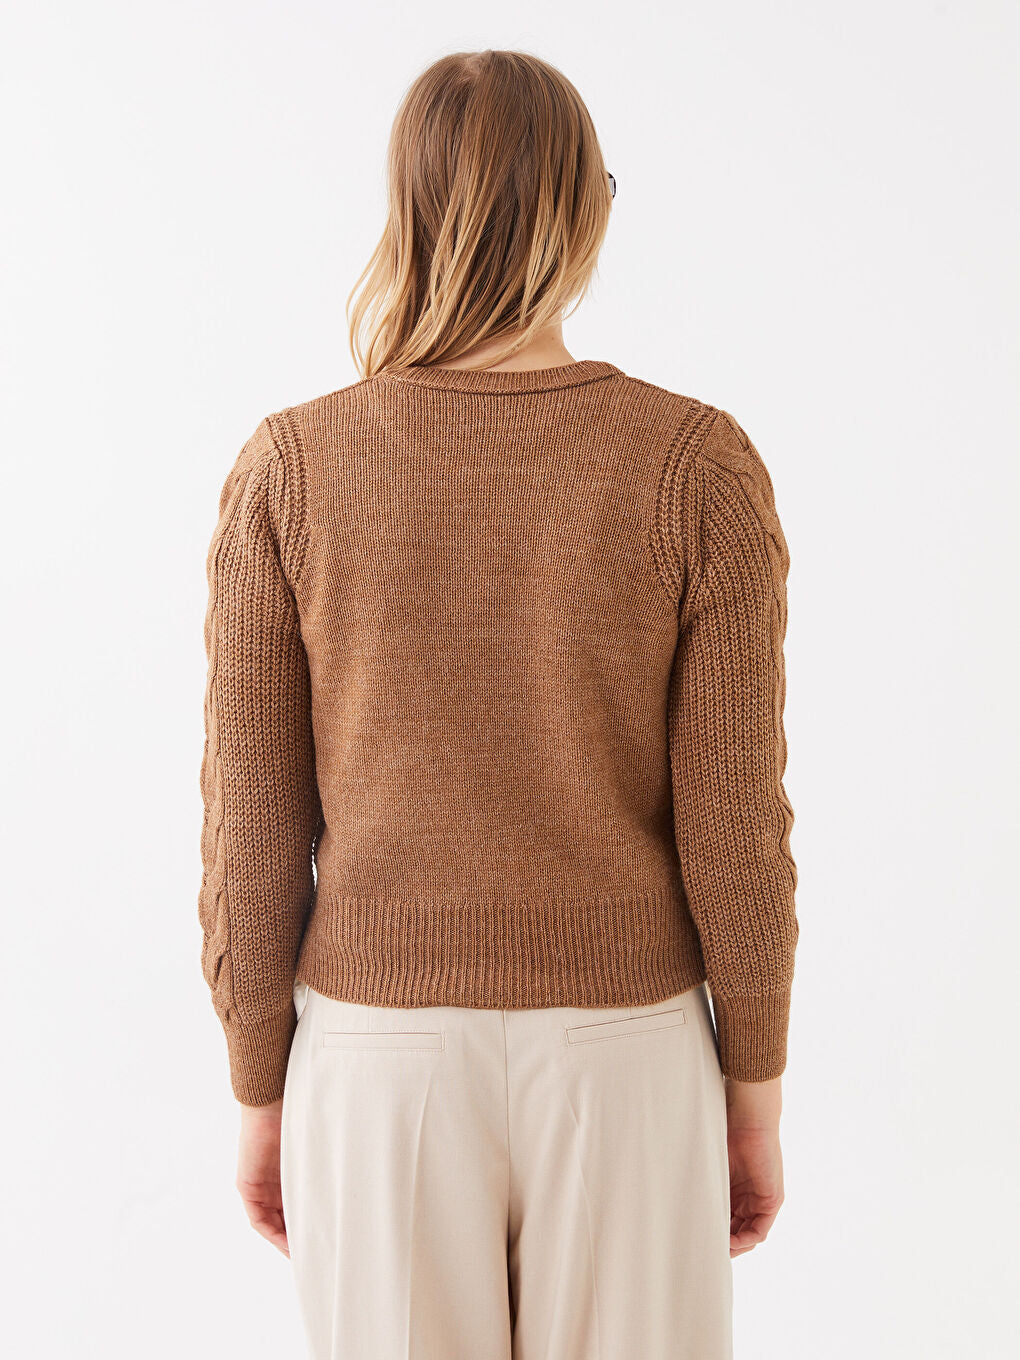 Crew Neck Self-Patterned Long Sleeve Women Knitwear Sweater